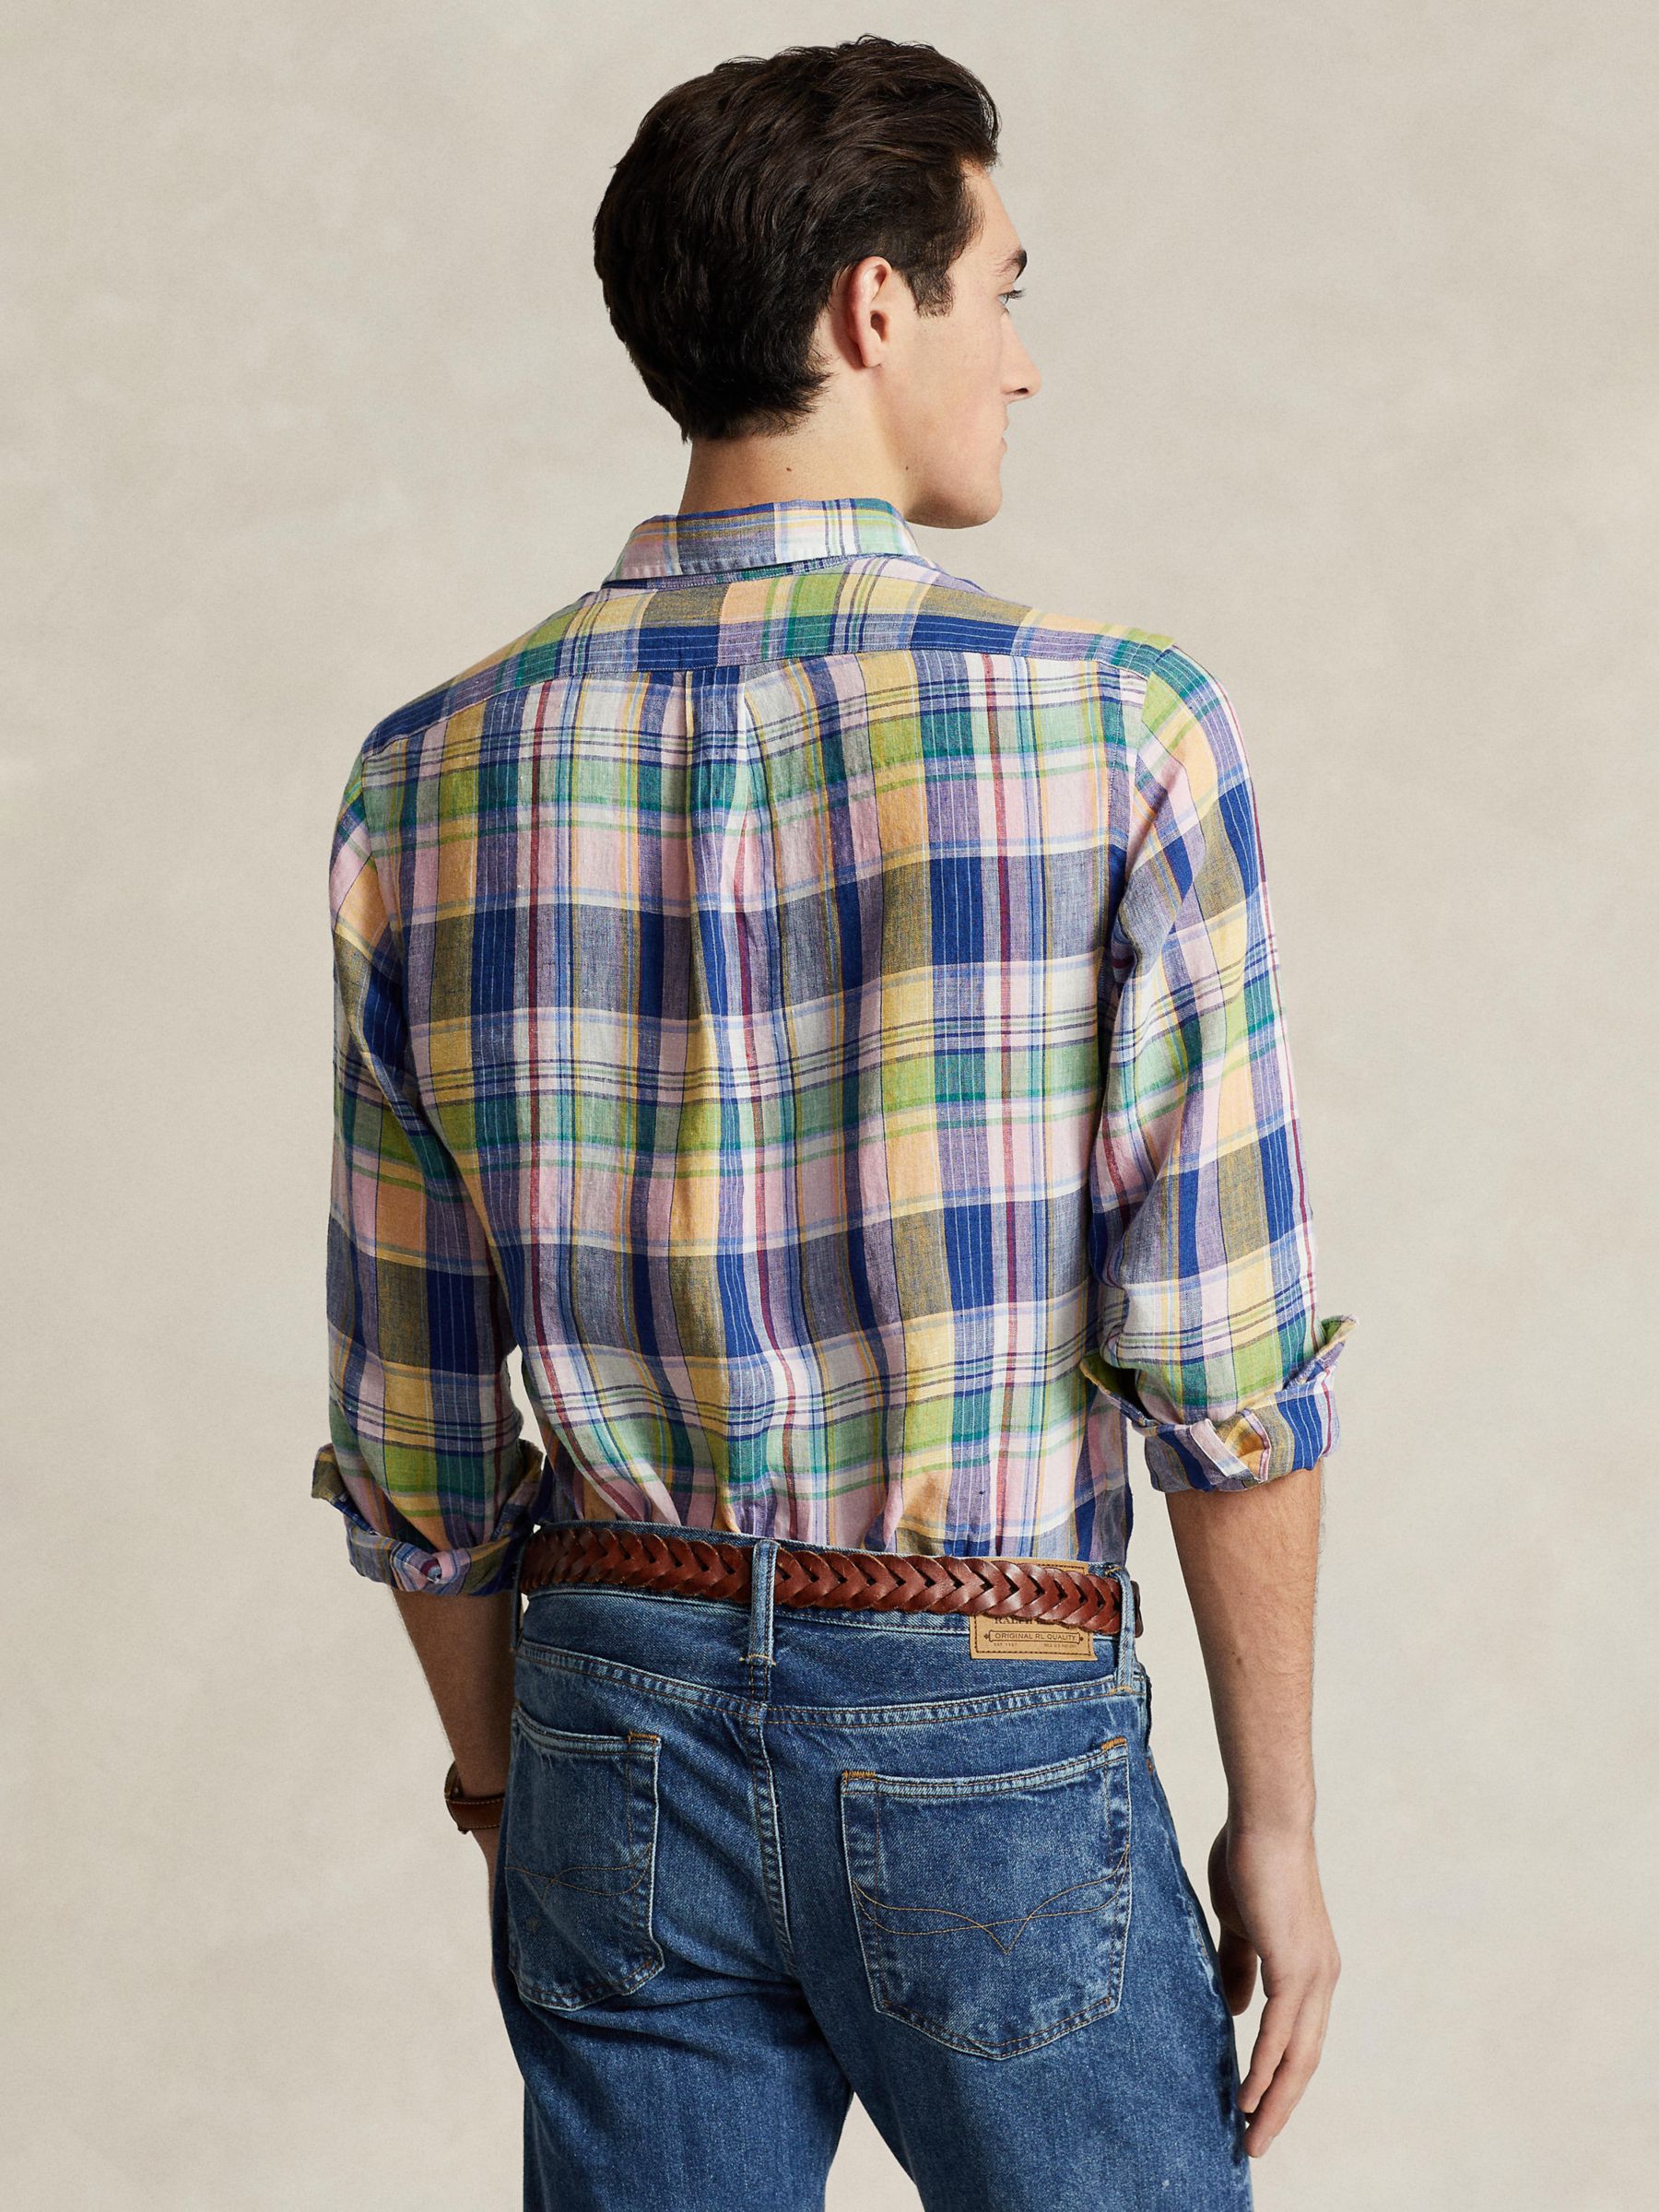 Ralph Lauren Linen Long Sleeve Check Shirt, Navy/Pink/Multi, S